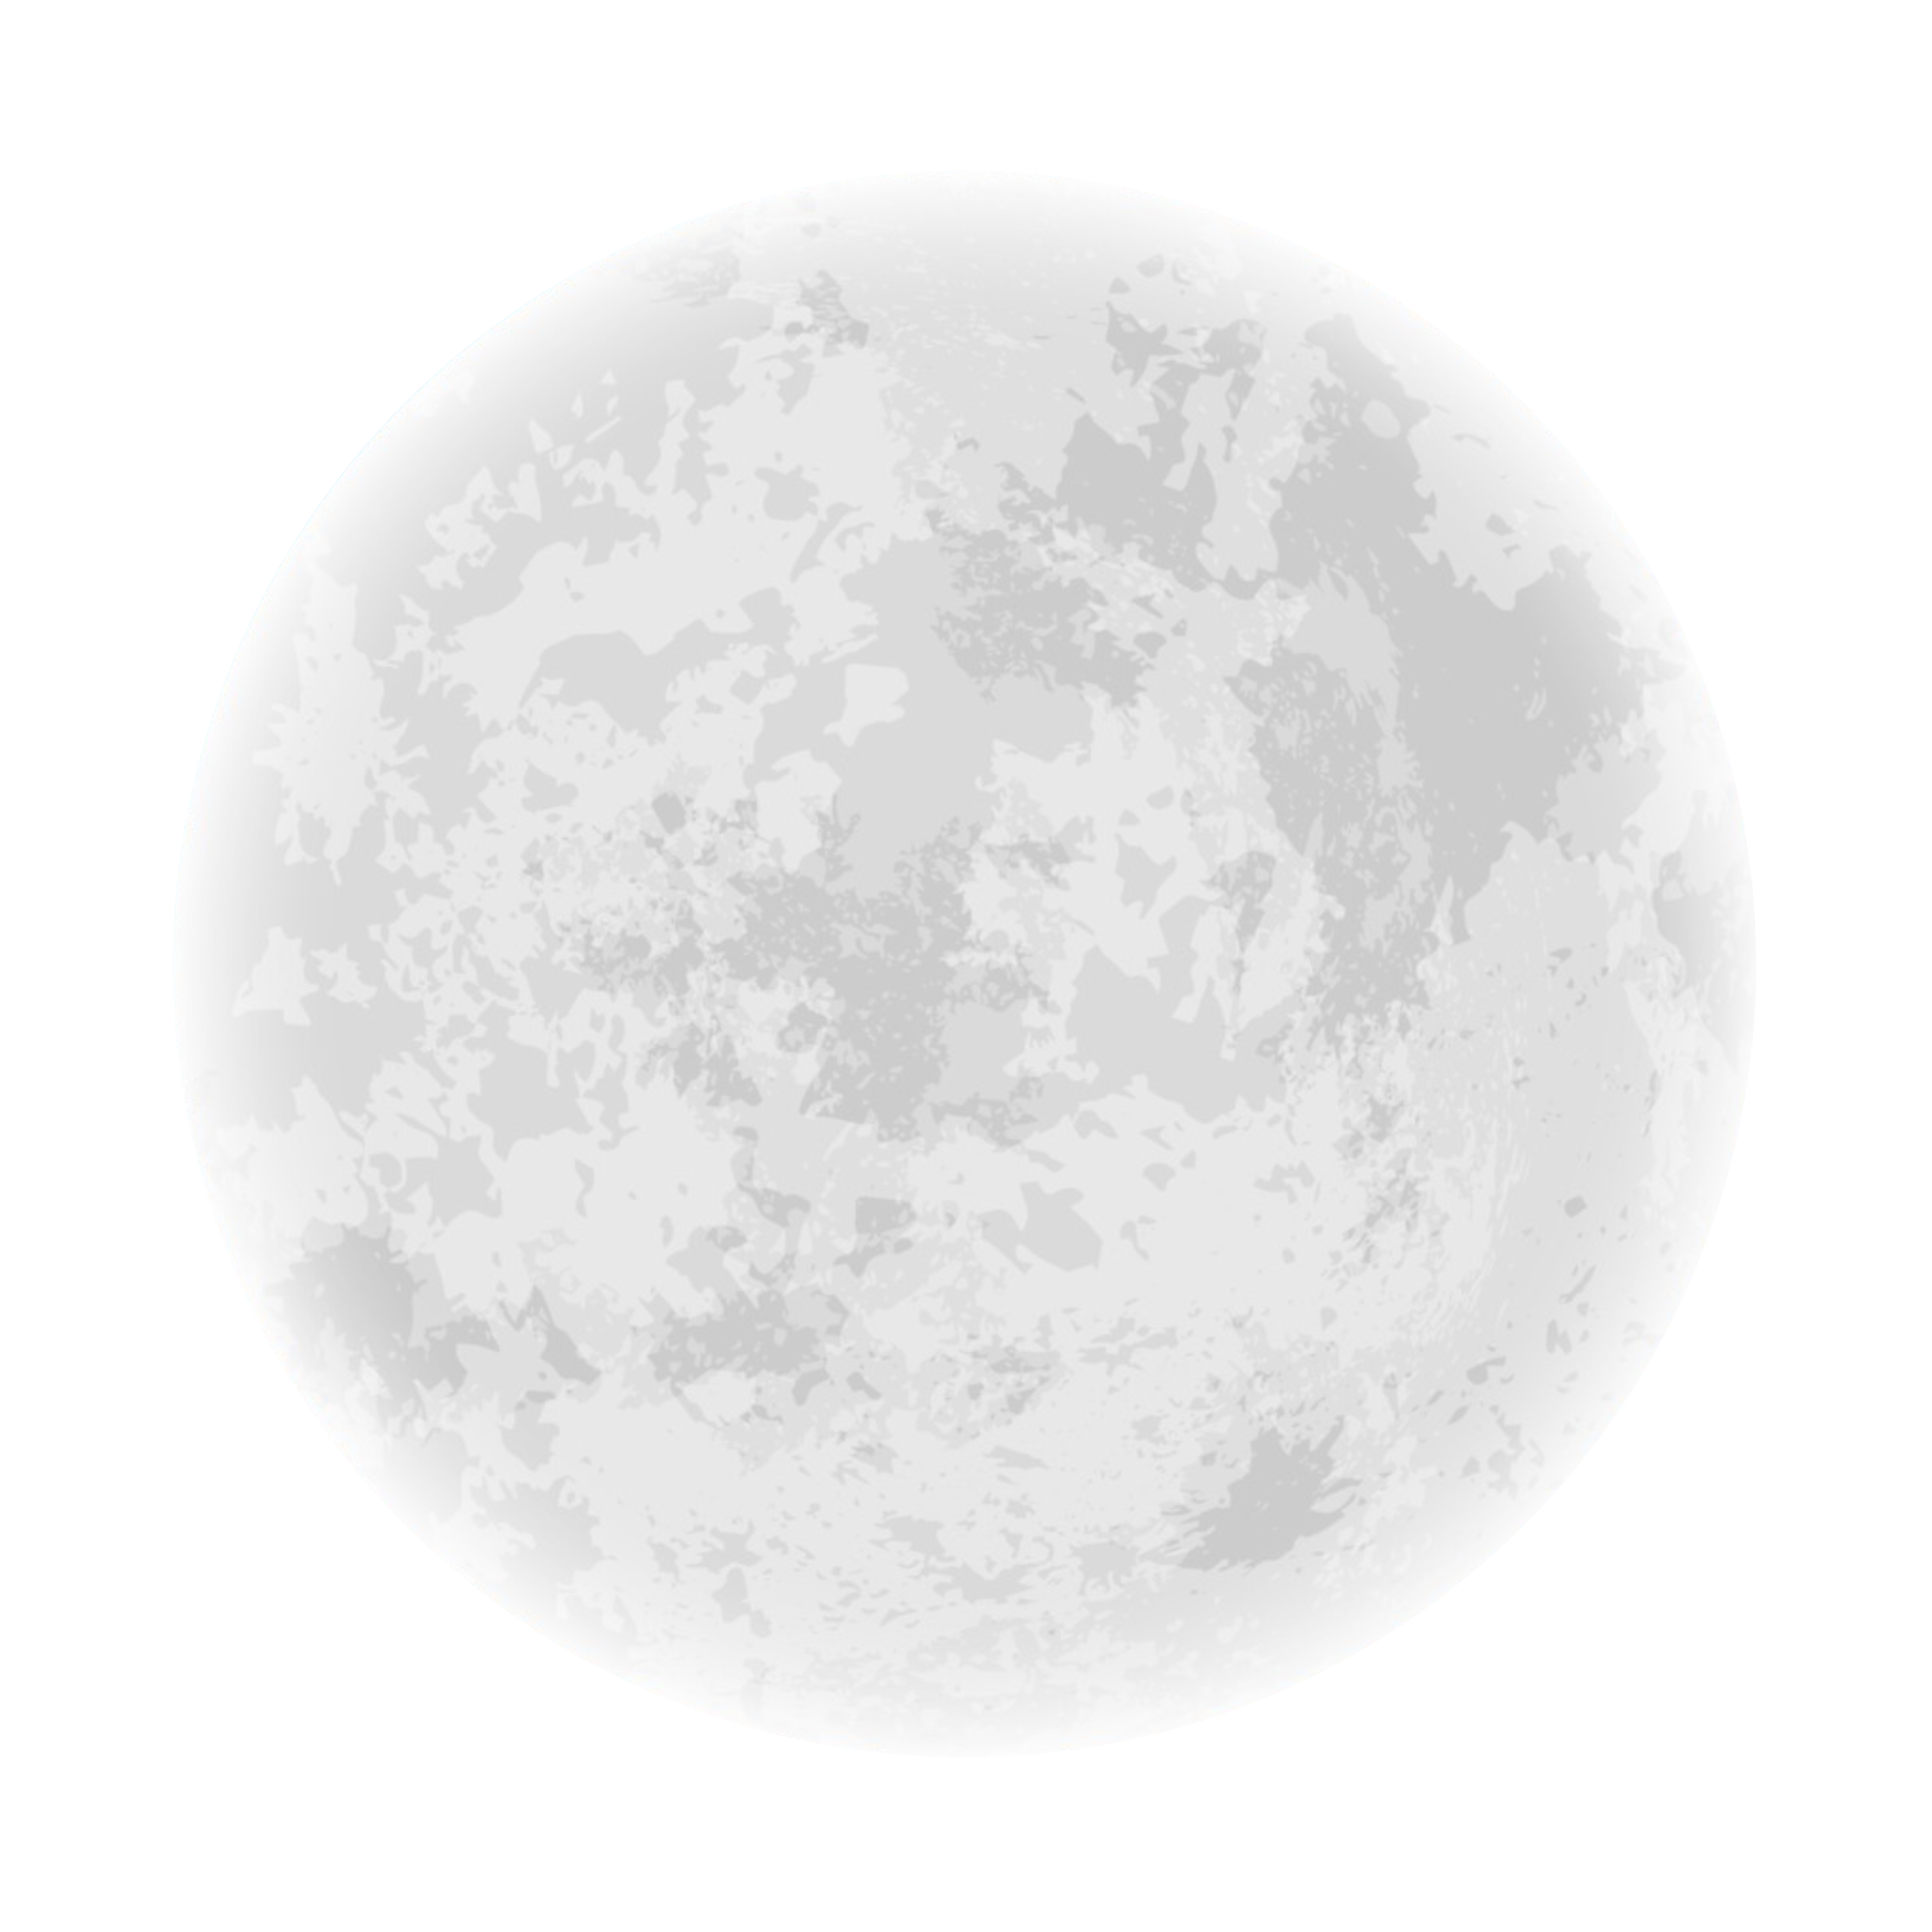 moon-141